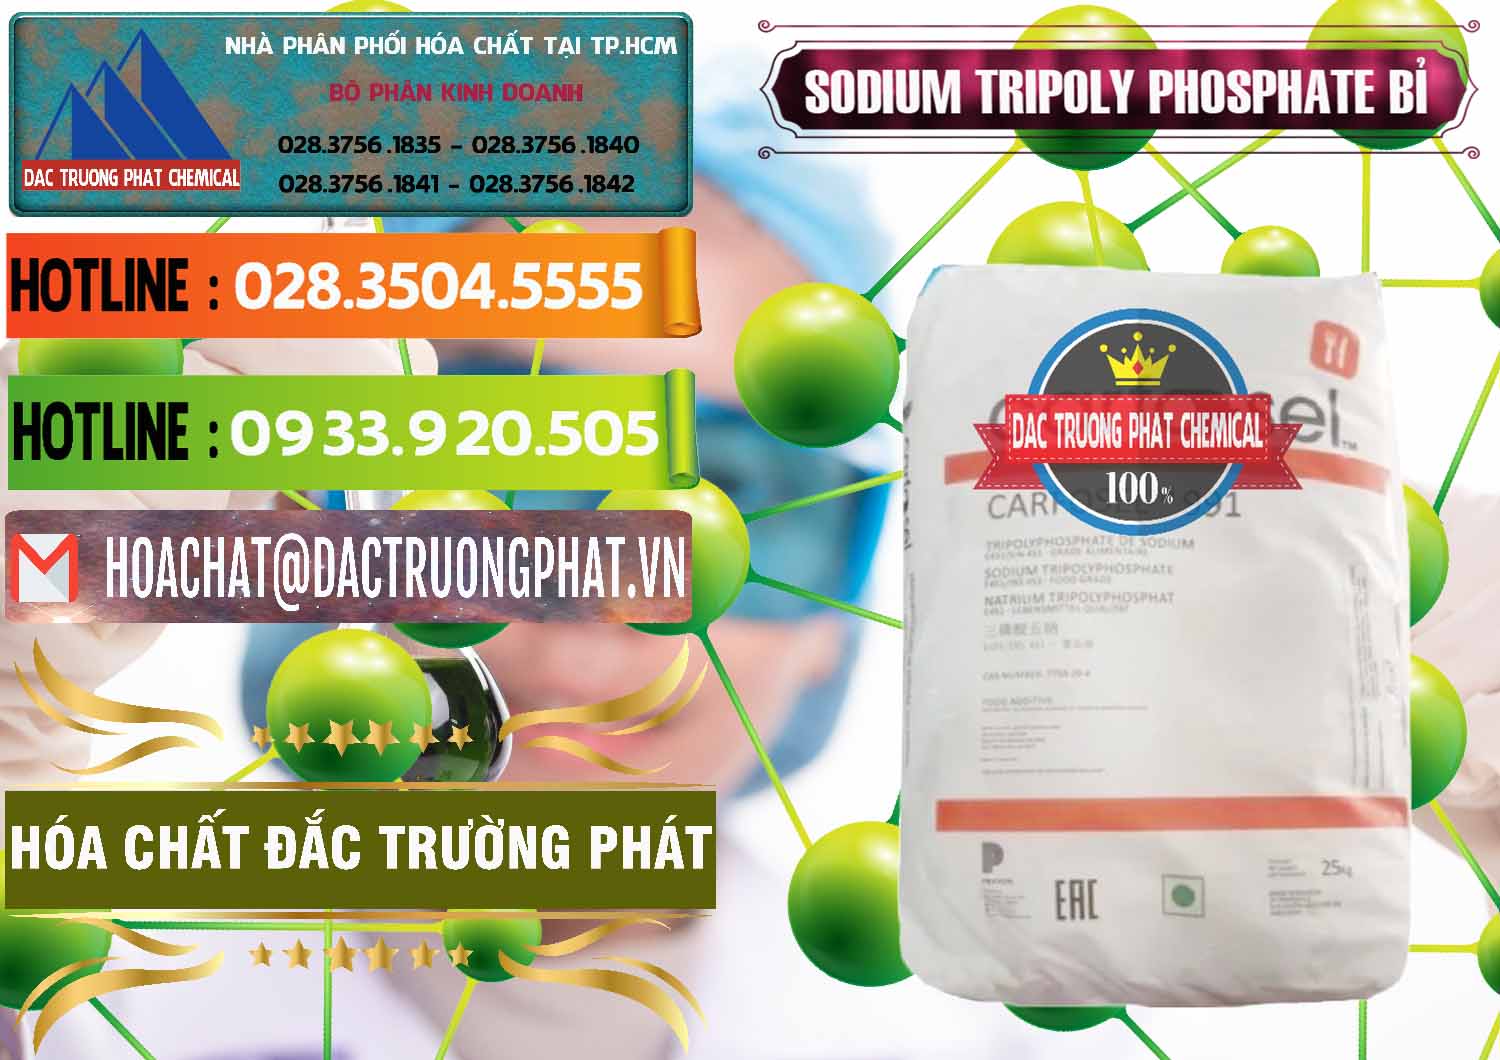 Cty cung ứng & bán Sodium Tripoly Phosphate - STPP Carfosel 991 Bỉ Belgium - 0429 - Công ty kinh doanh - phân phối hóa chất tại TP.HCM - cungcaphoachat.com.vn